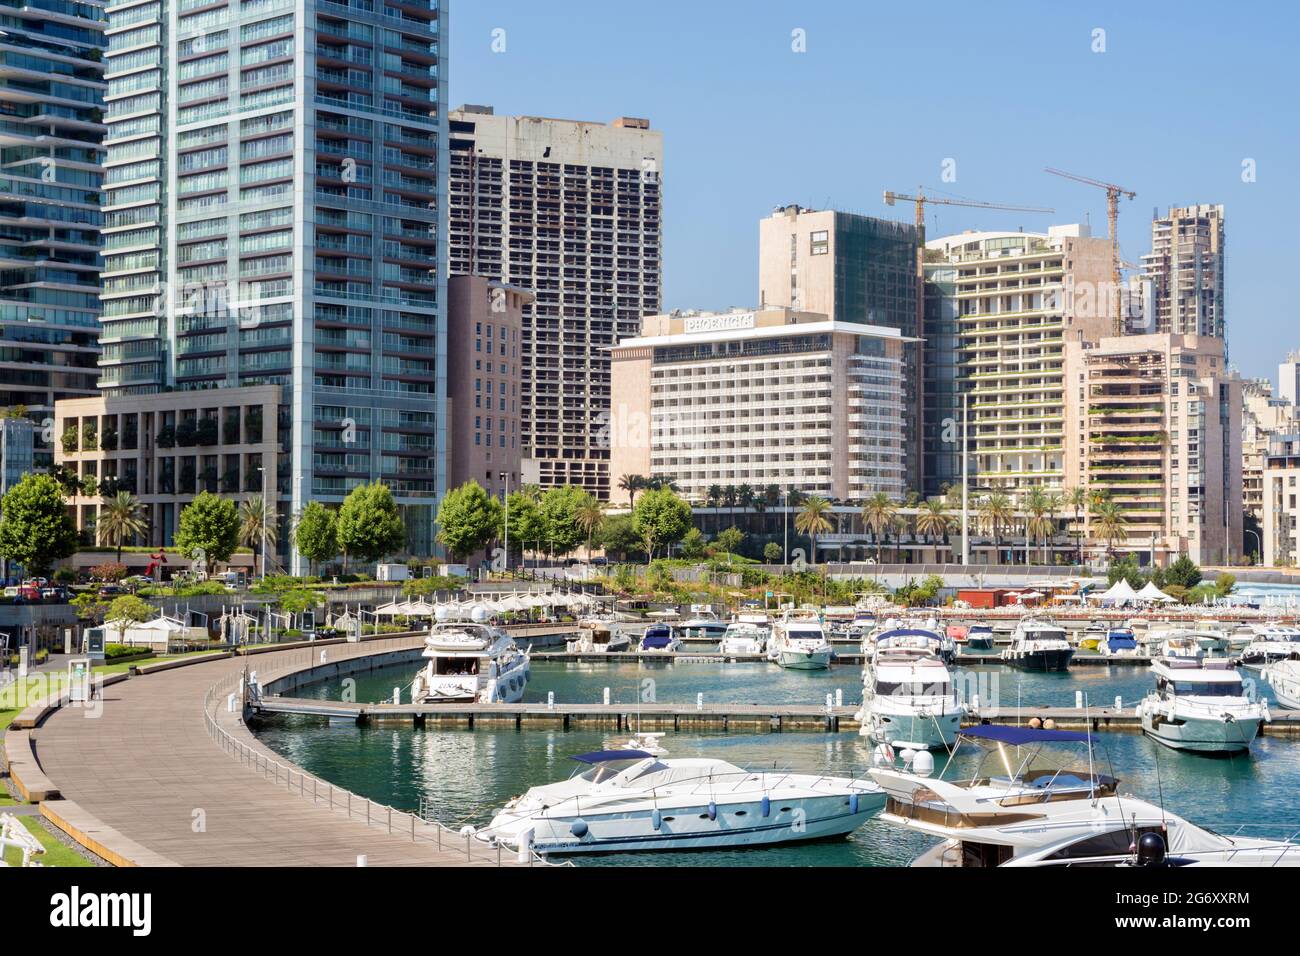 Phoenicia Hotel and Zaitunay bay in Beirut, Lebanon Stock Photo